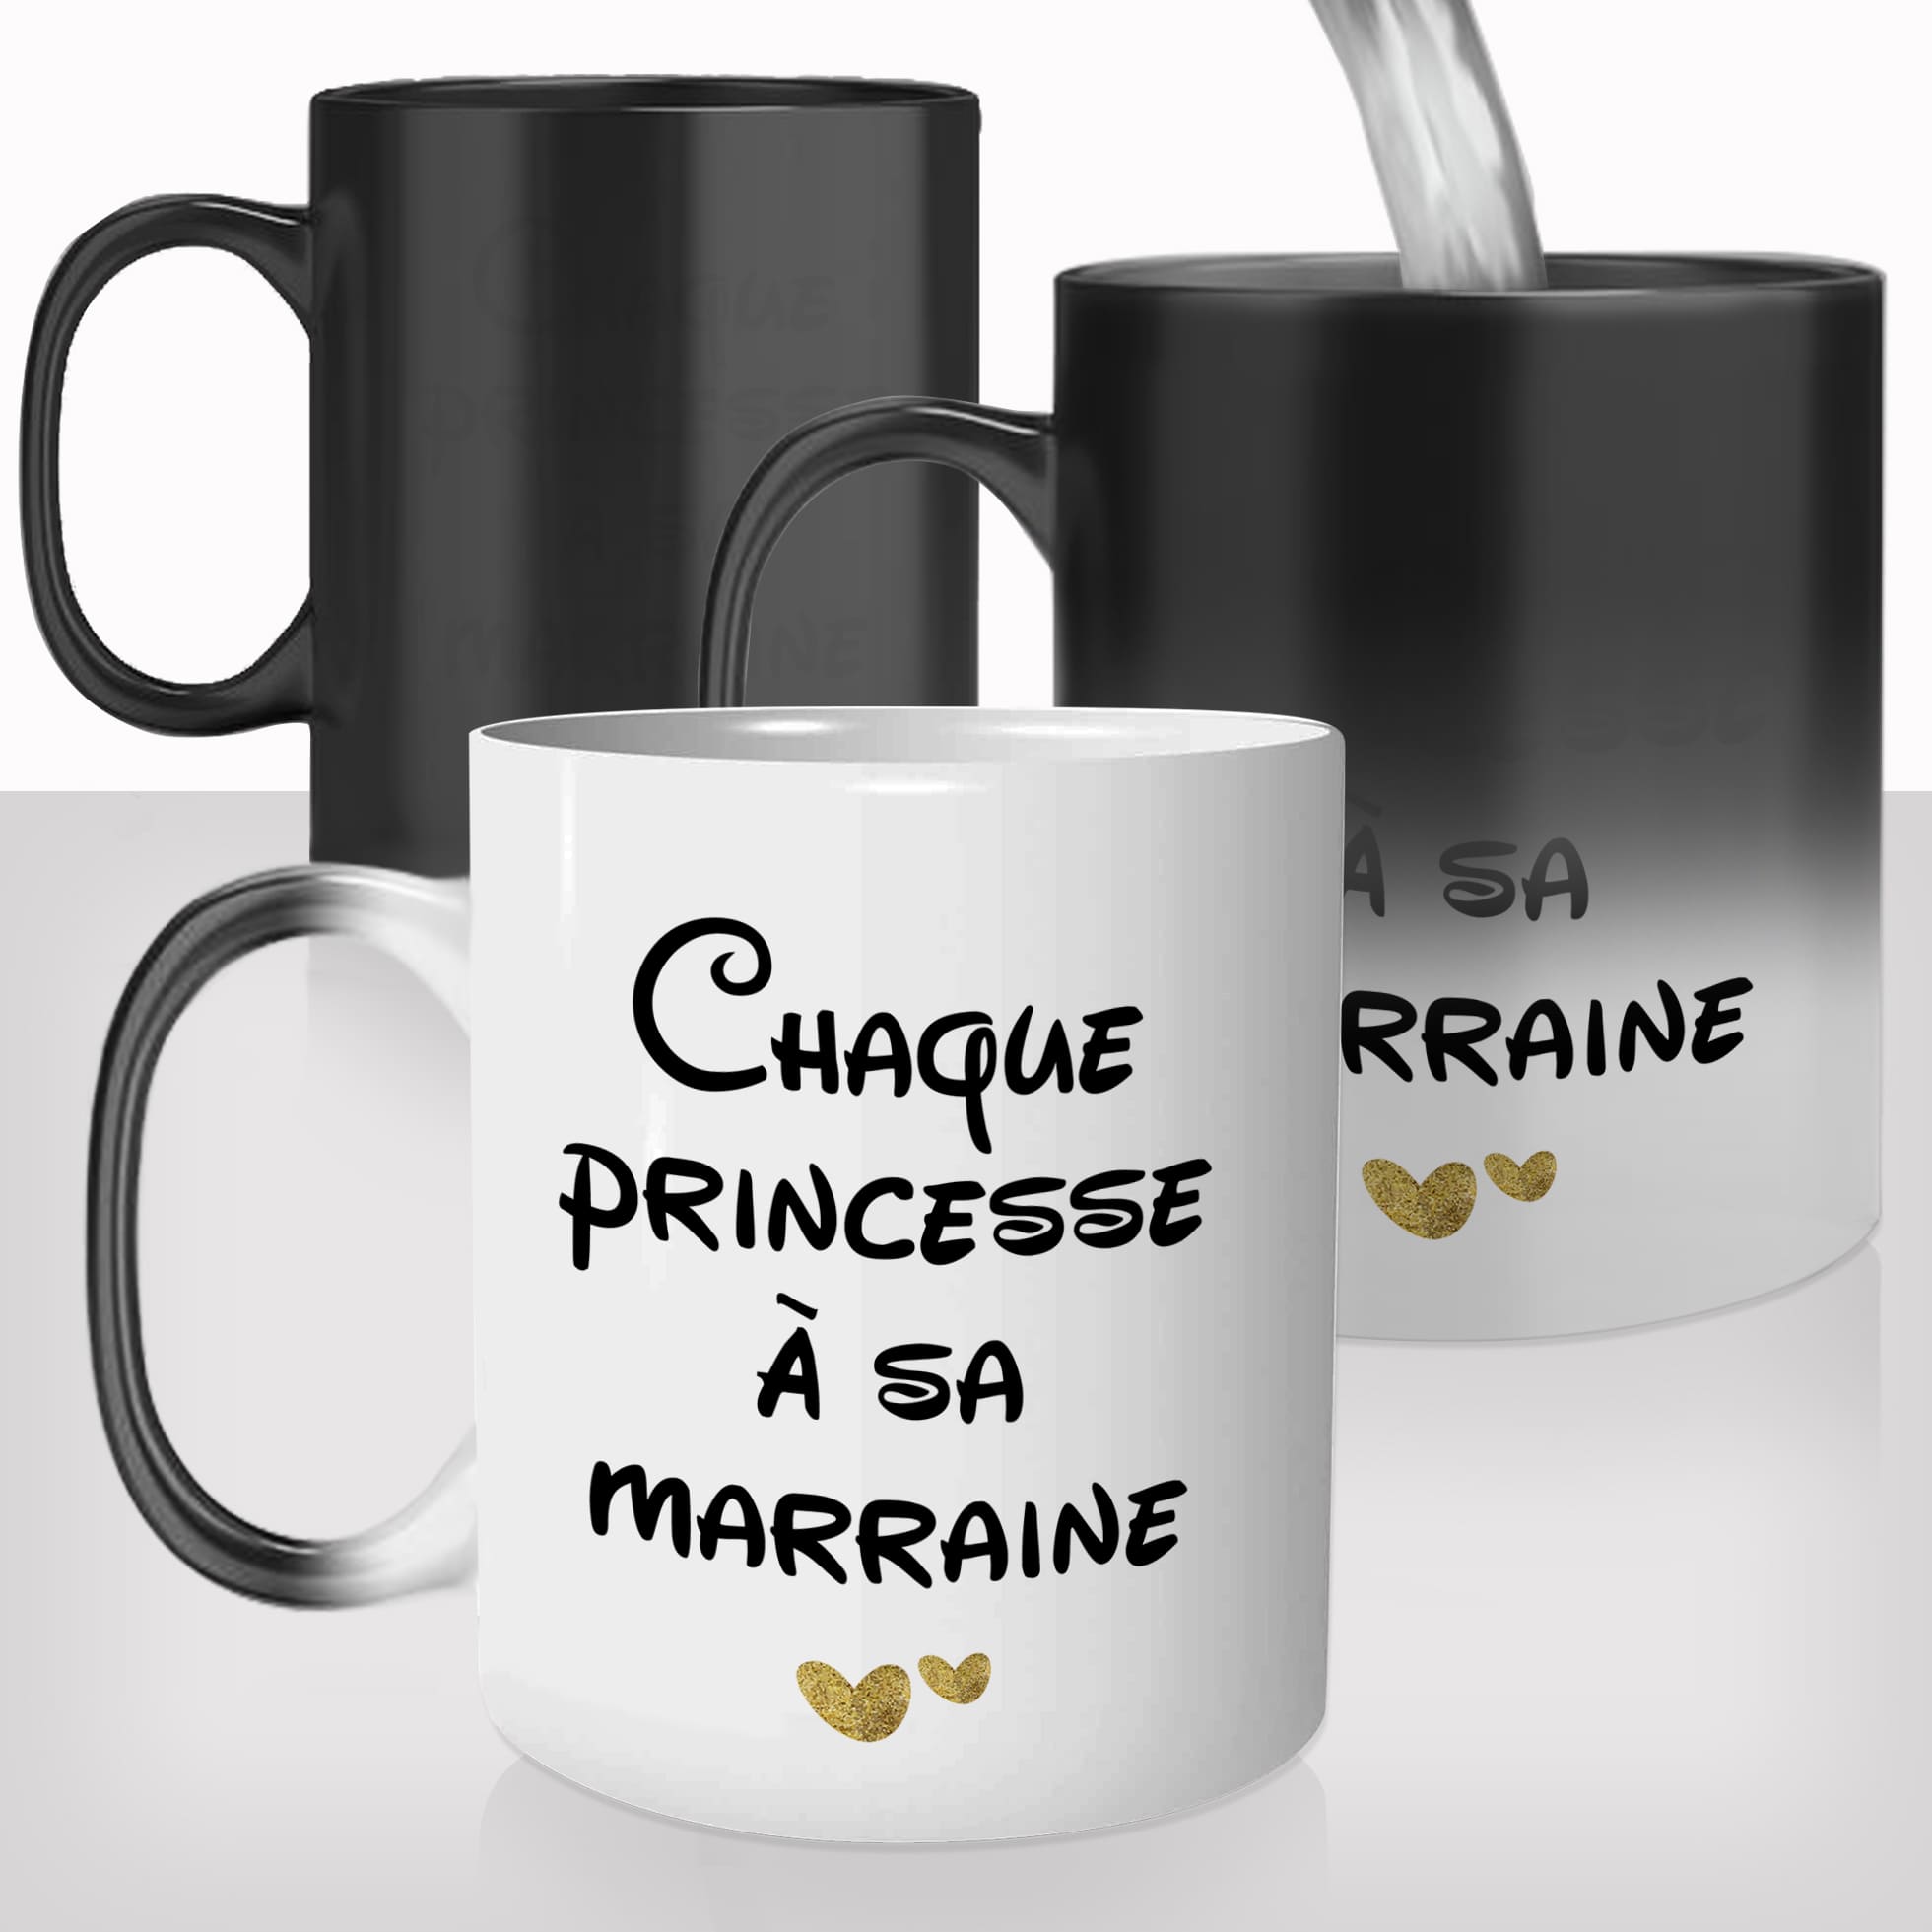 Mug Magique Chaque Princesse sa Marraine - Marraine - mug-magique